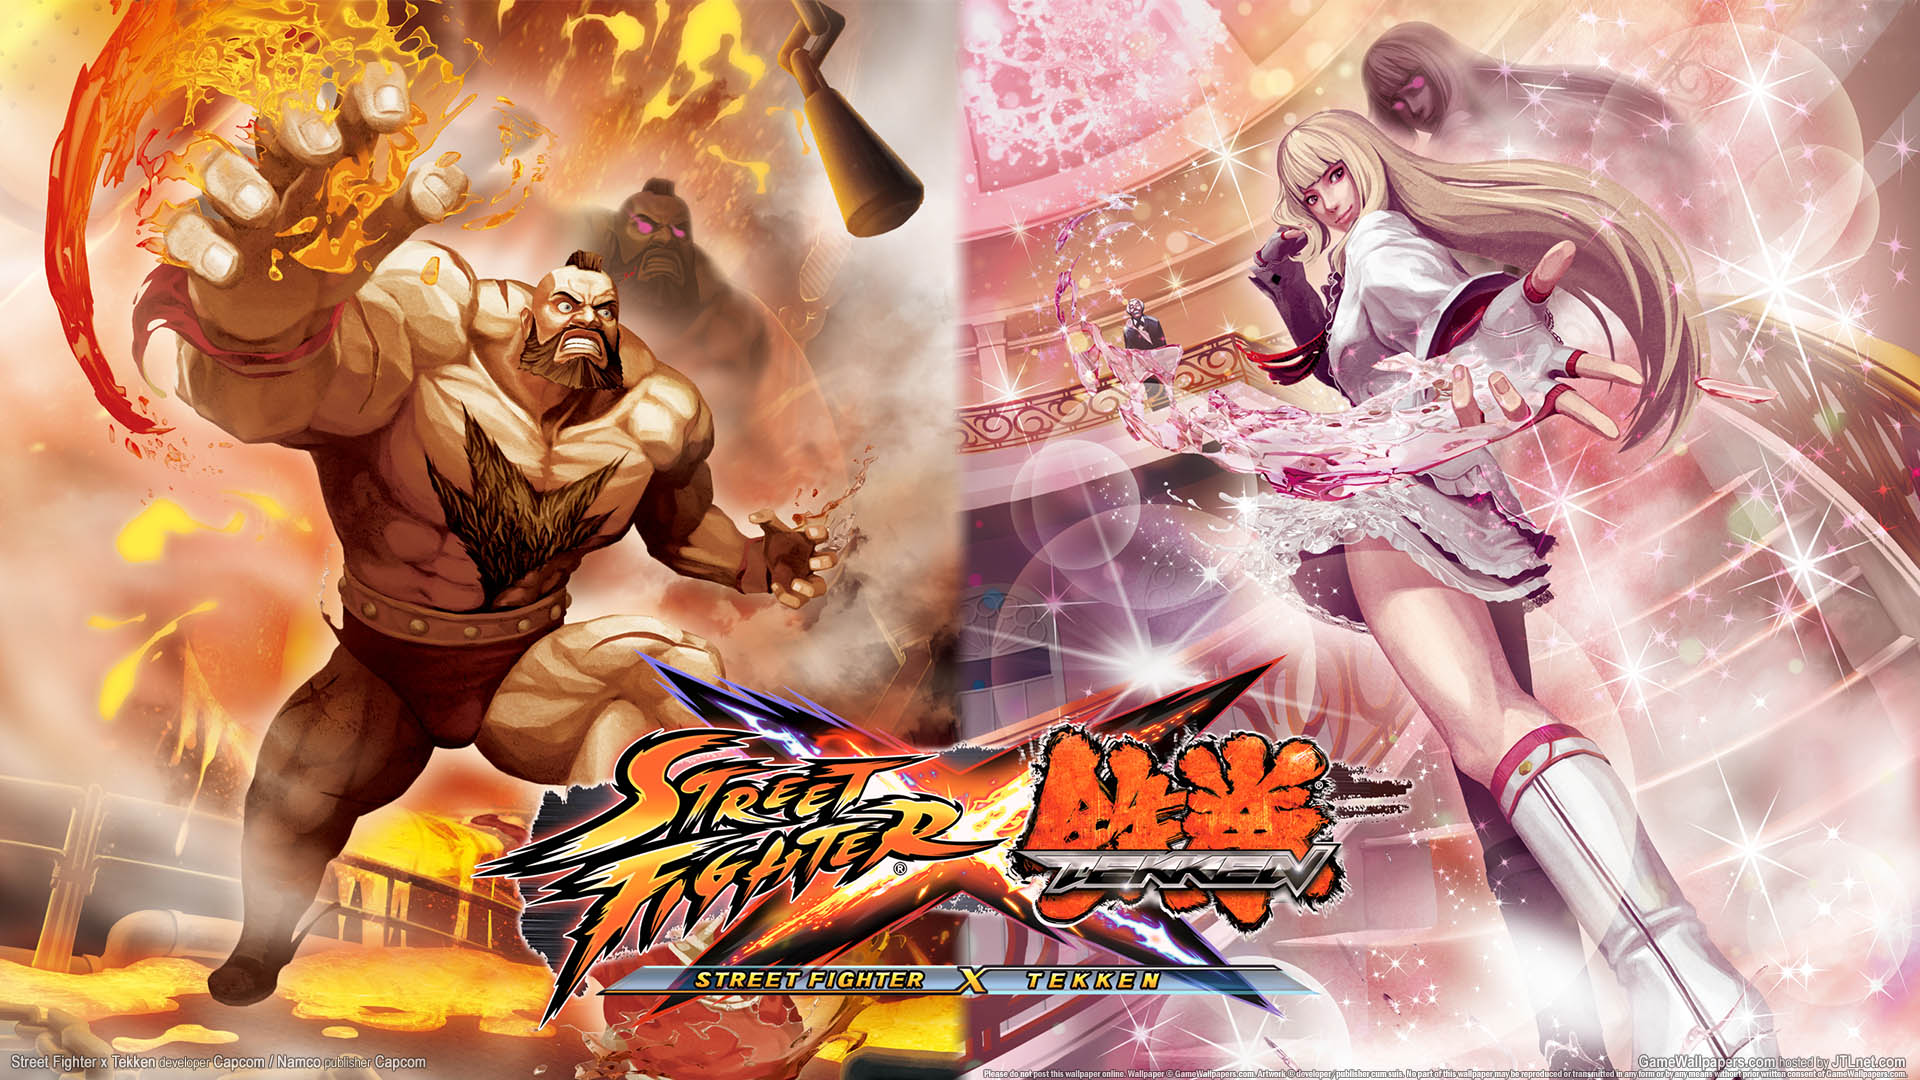 Street Fighter x Tekken achtergrond 02 1920x1080